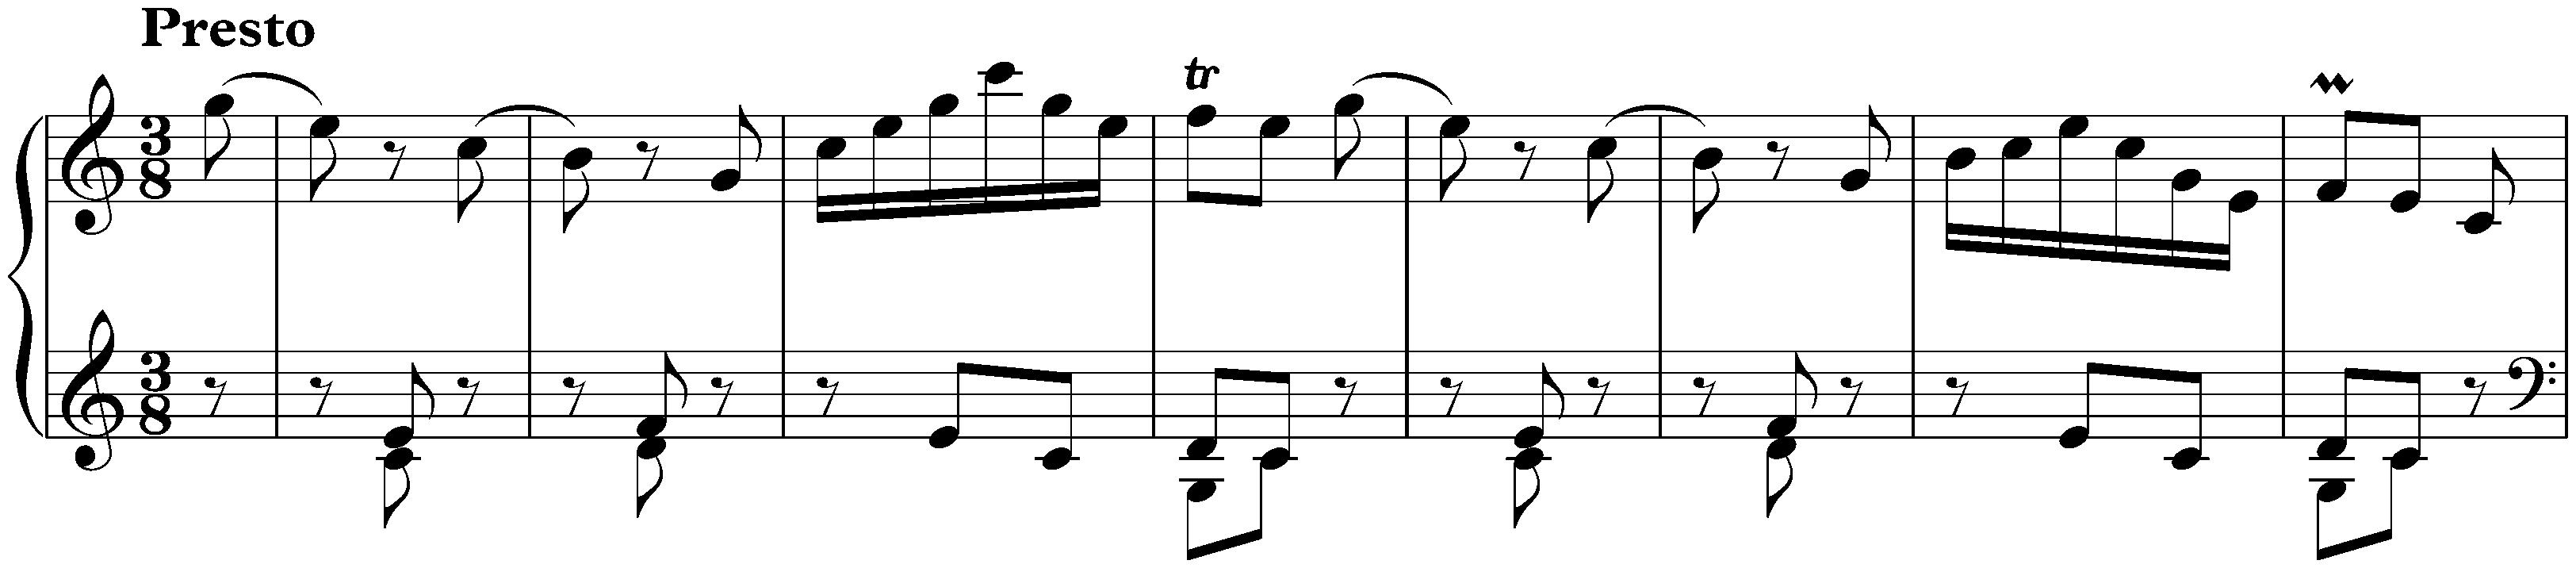 Sonata in C major, Hob. XVI:21; 3. Finale: Presto